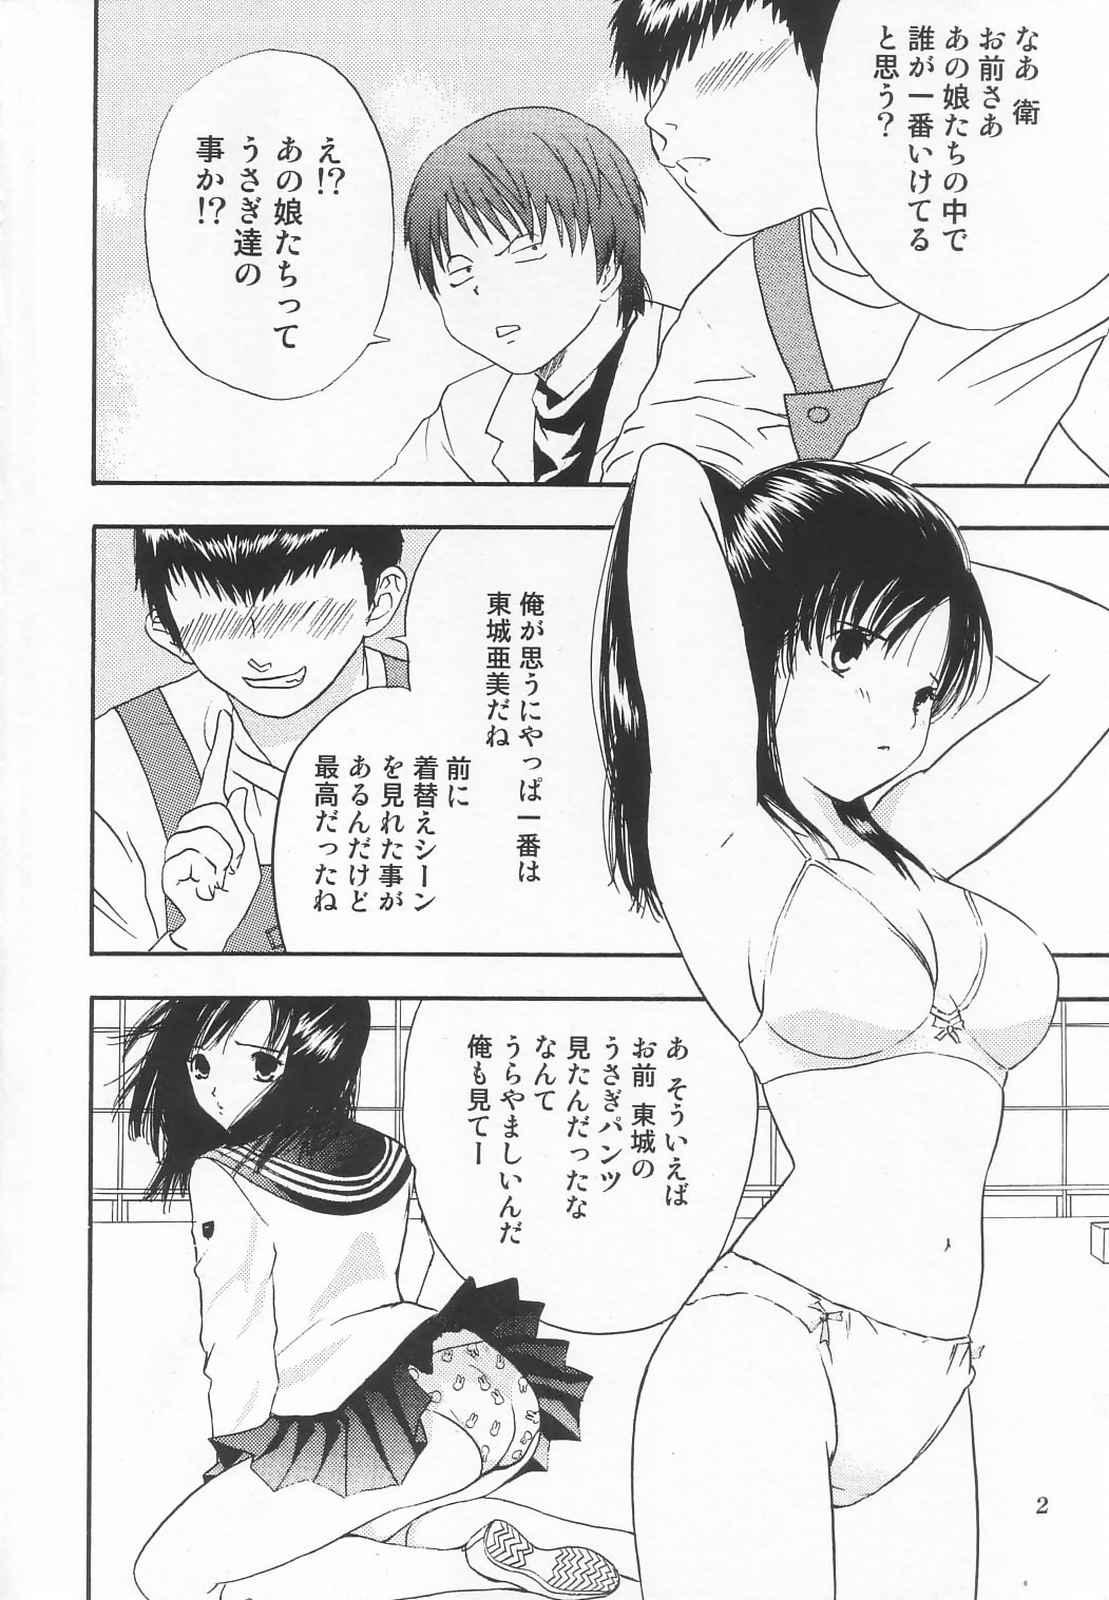 Free Amateur Tokusatsu Magazine x 2003 Fuyu Gou - Sailor moon Ichigo 100 Blow Job - Page 4